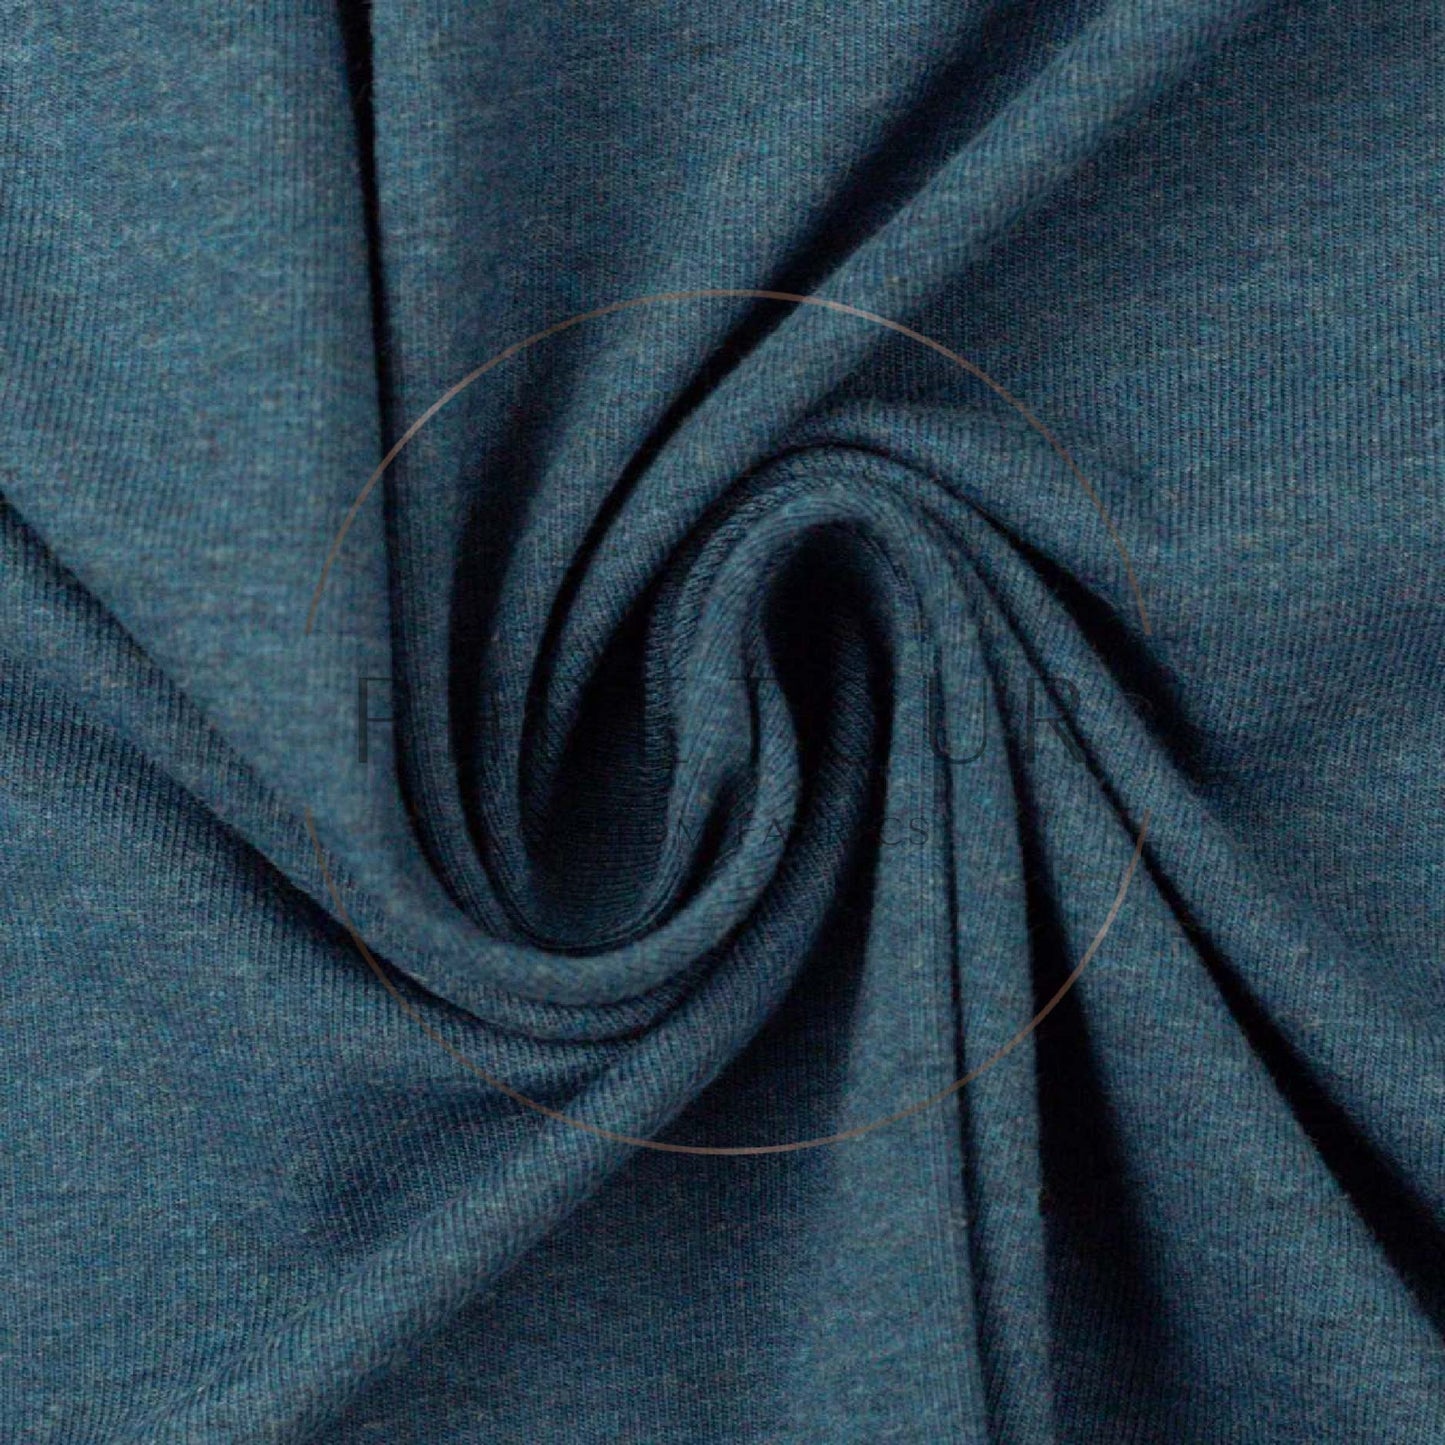 Wholesale Italian Sweater Knit - 1259 - Blue Grey